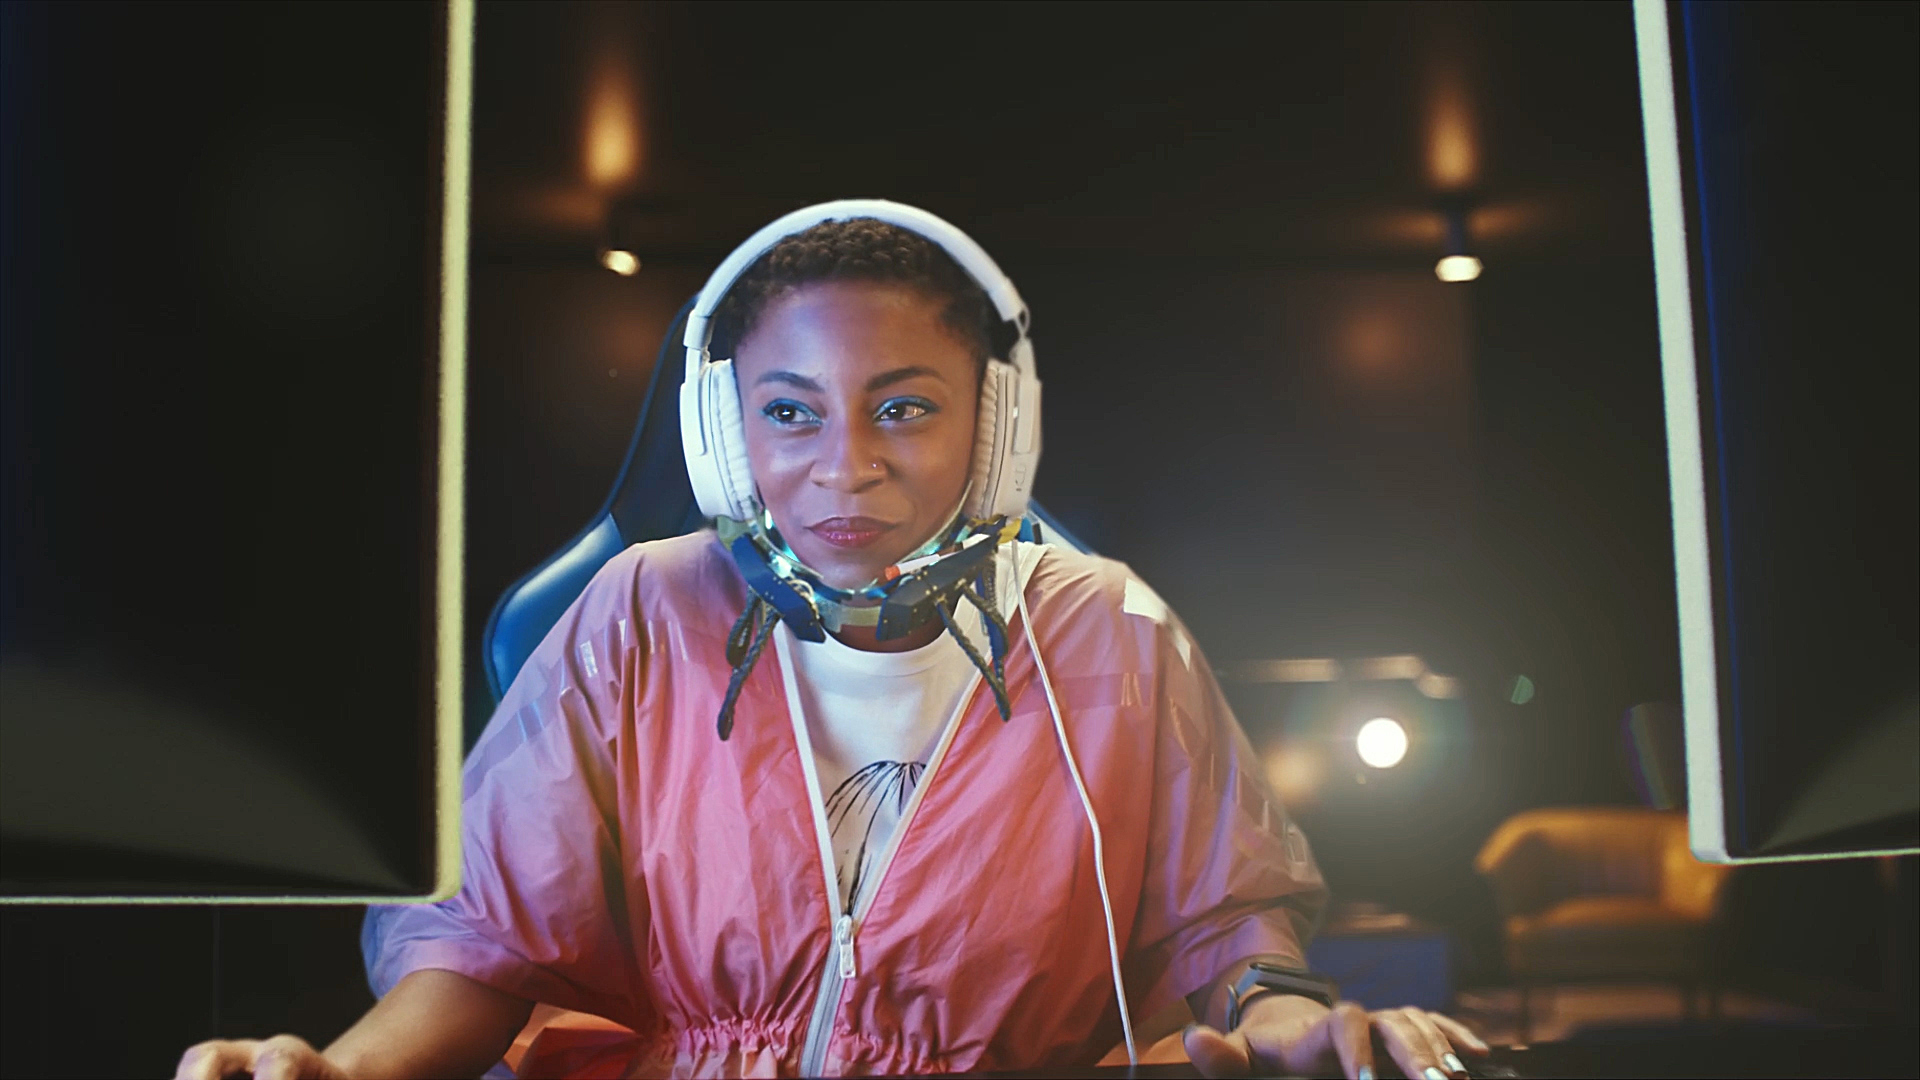 Na imagem, uma moça aparece sorrindo enquanto parece jogar online.